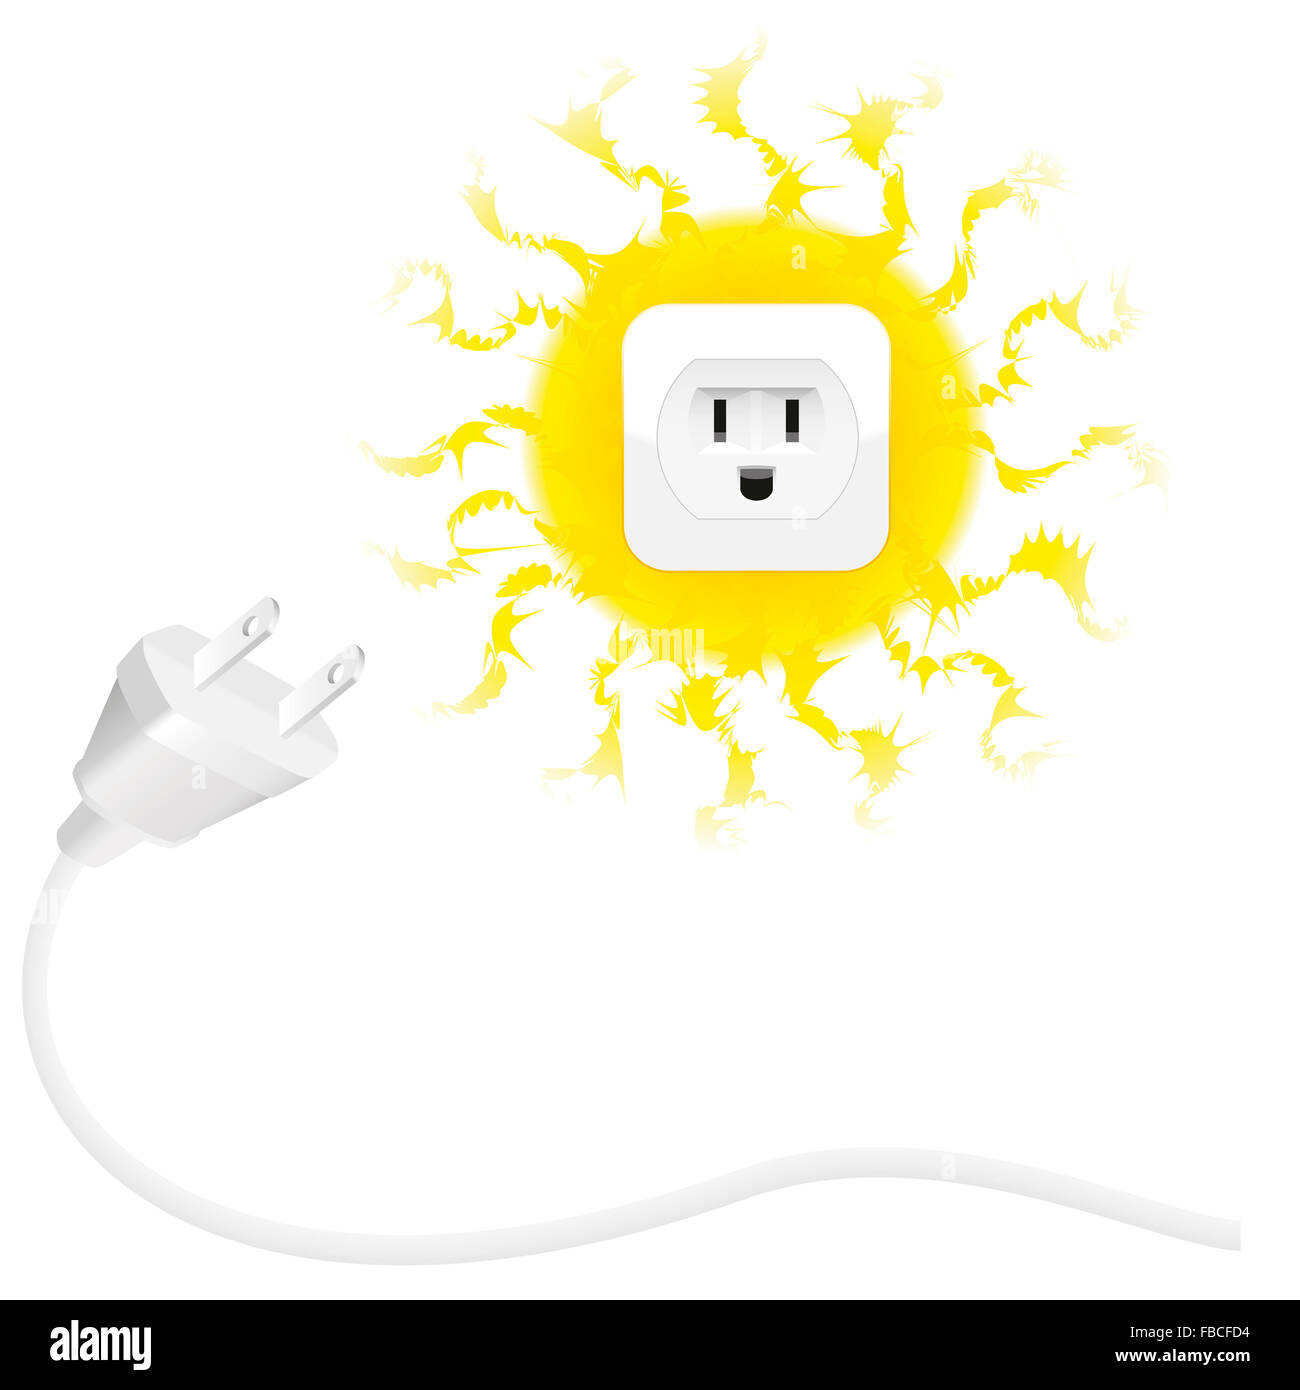 Renewable energy - solar energy - plug and sun with socket. Illustration on white background. Stock Photo